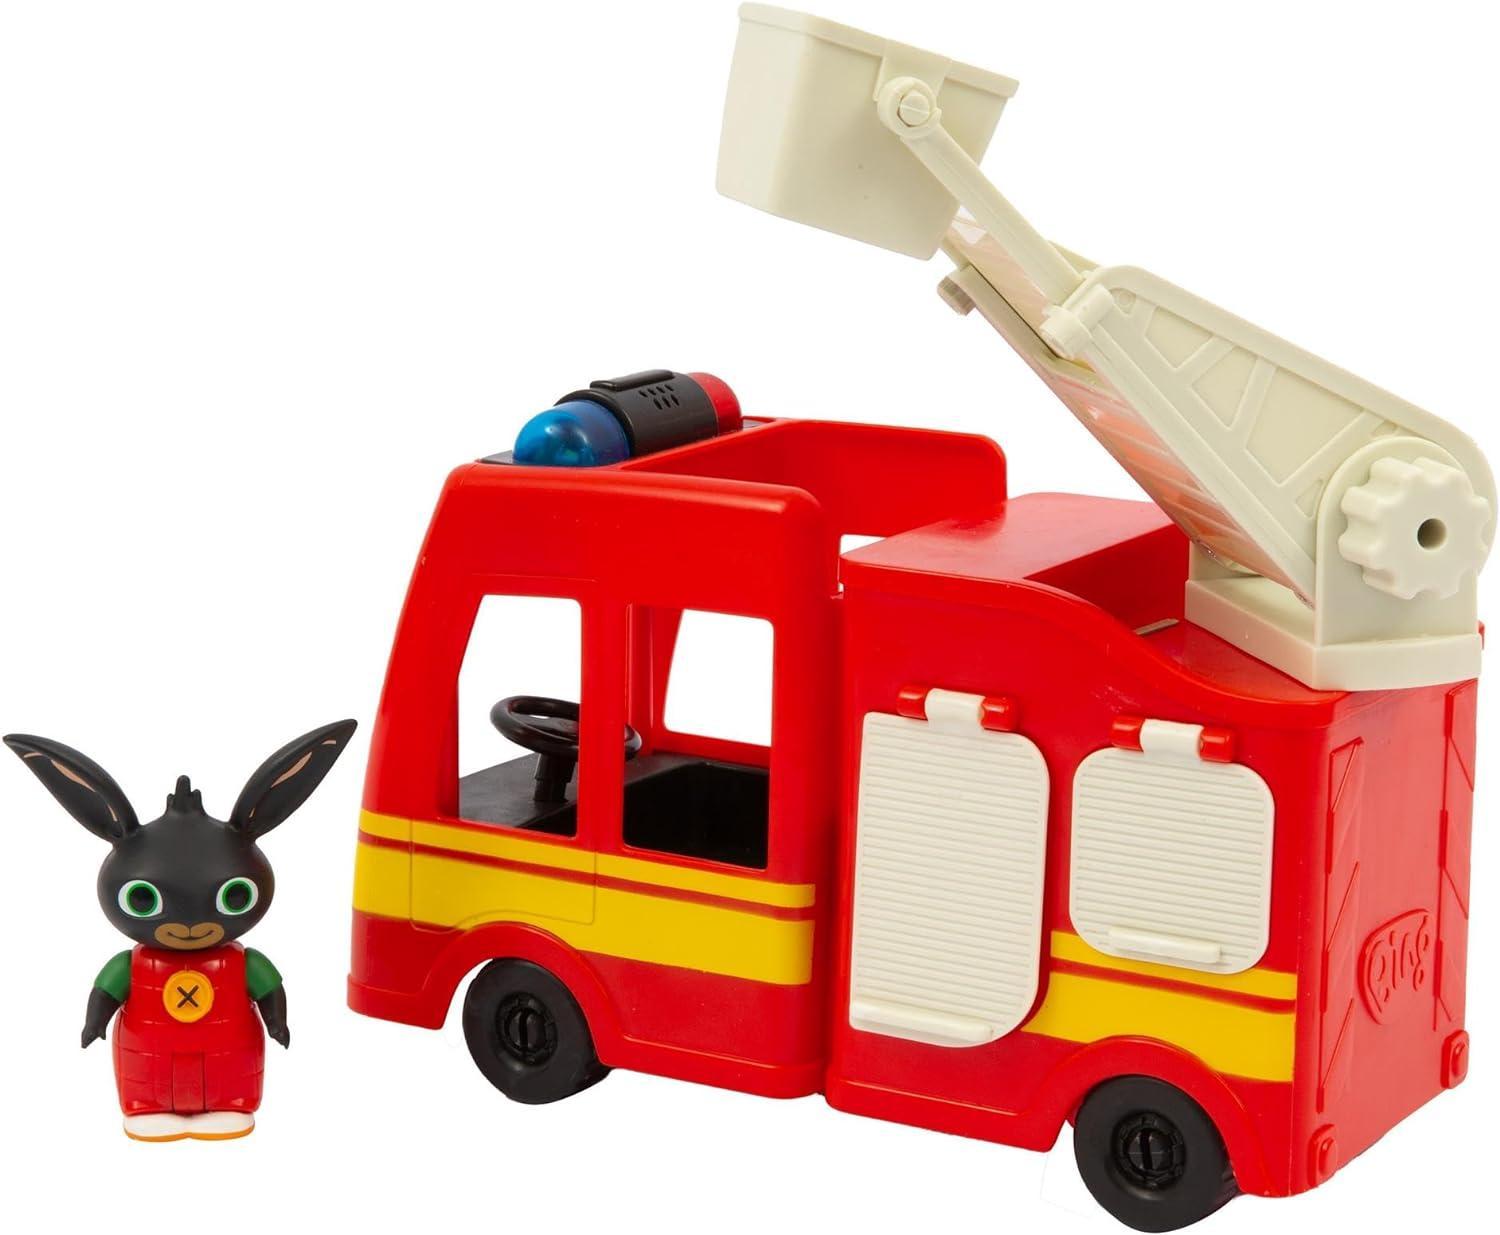 giochi preziosi bing camion pompieri luci